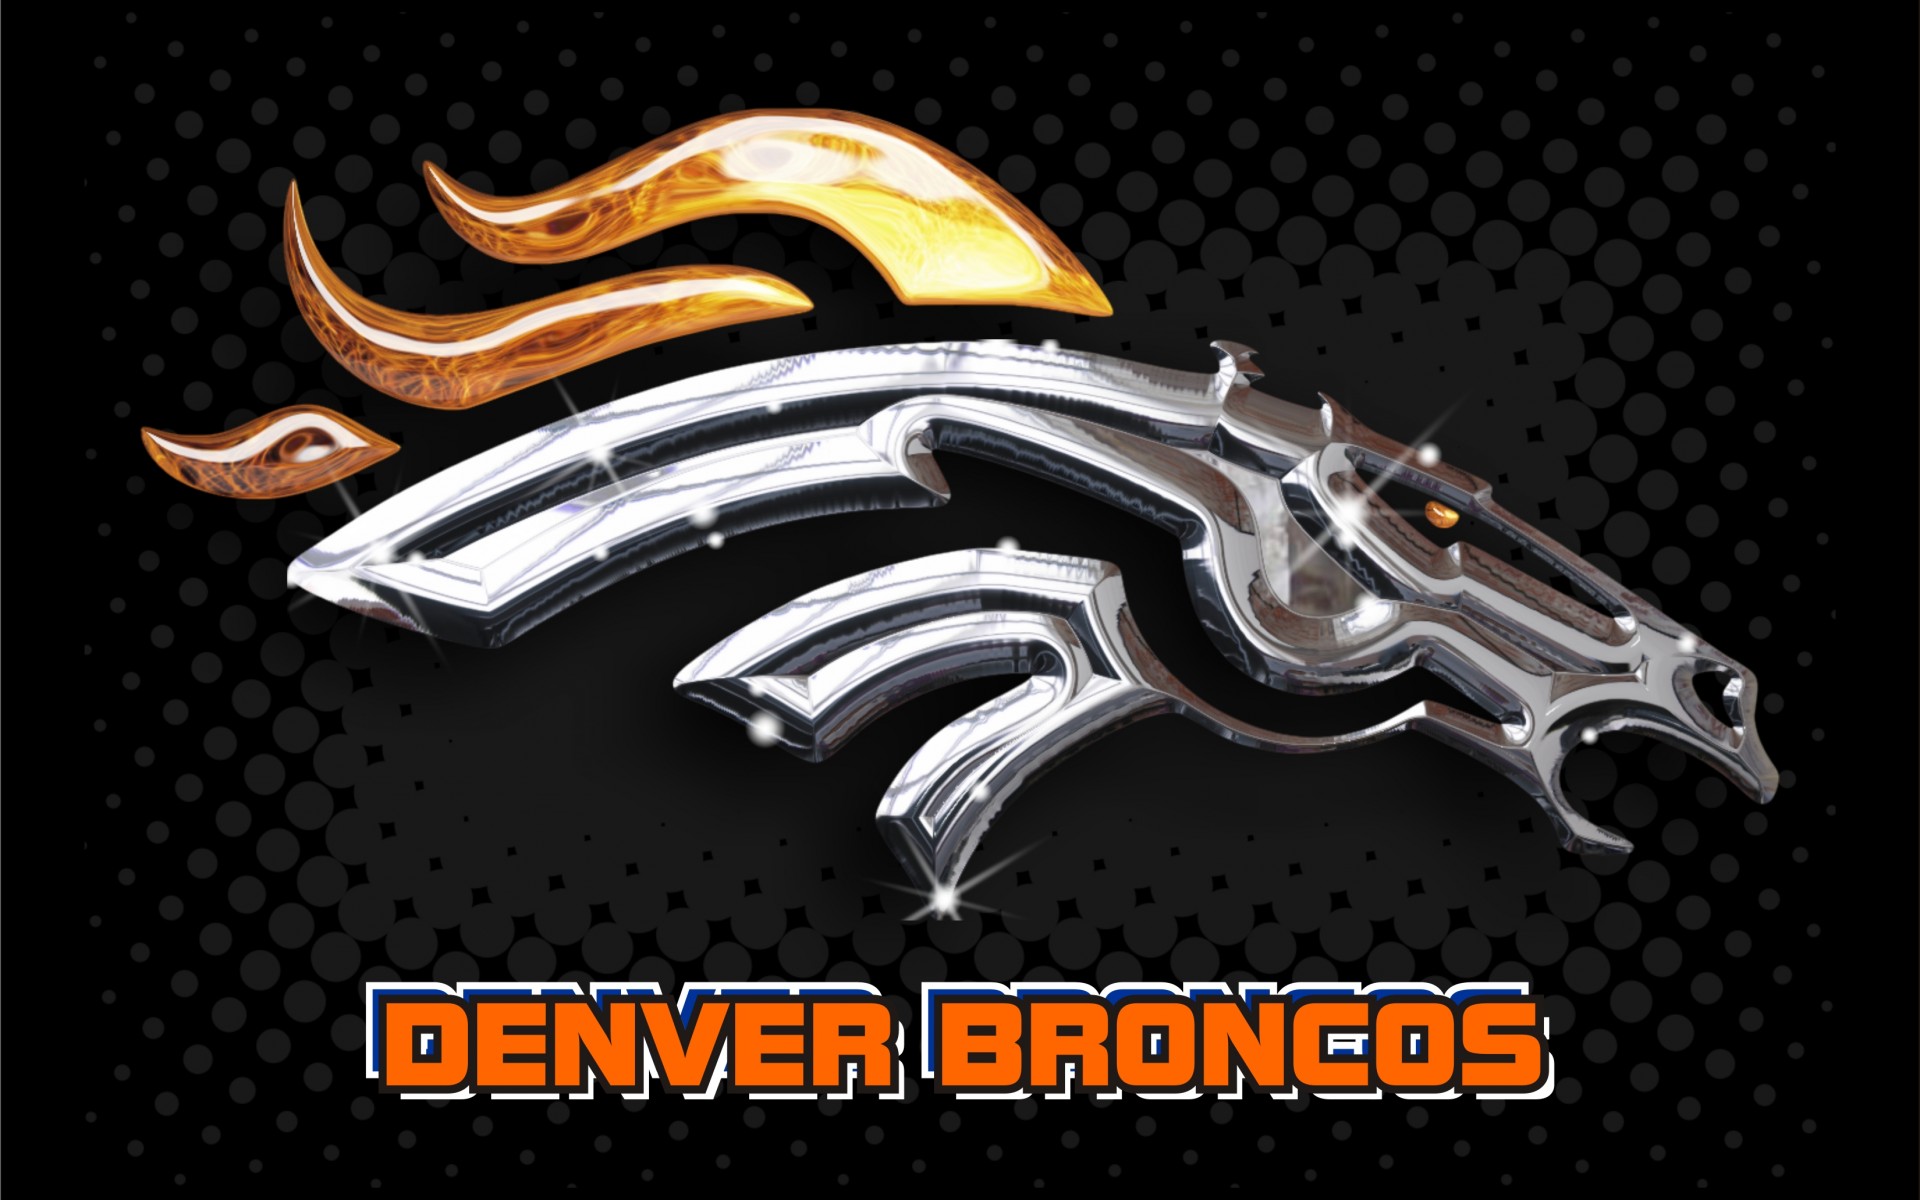 Denver Broncos Logo Wallpaper | Wallpapers, Backgrounds, Images, Art ...